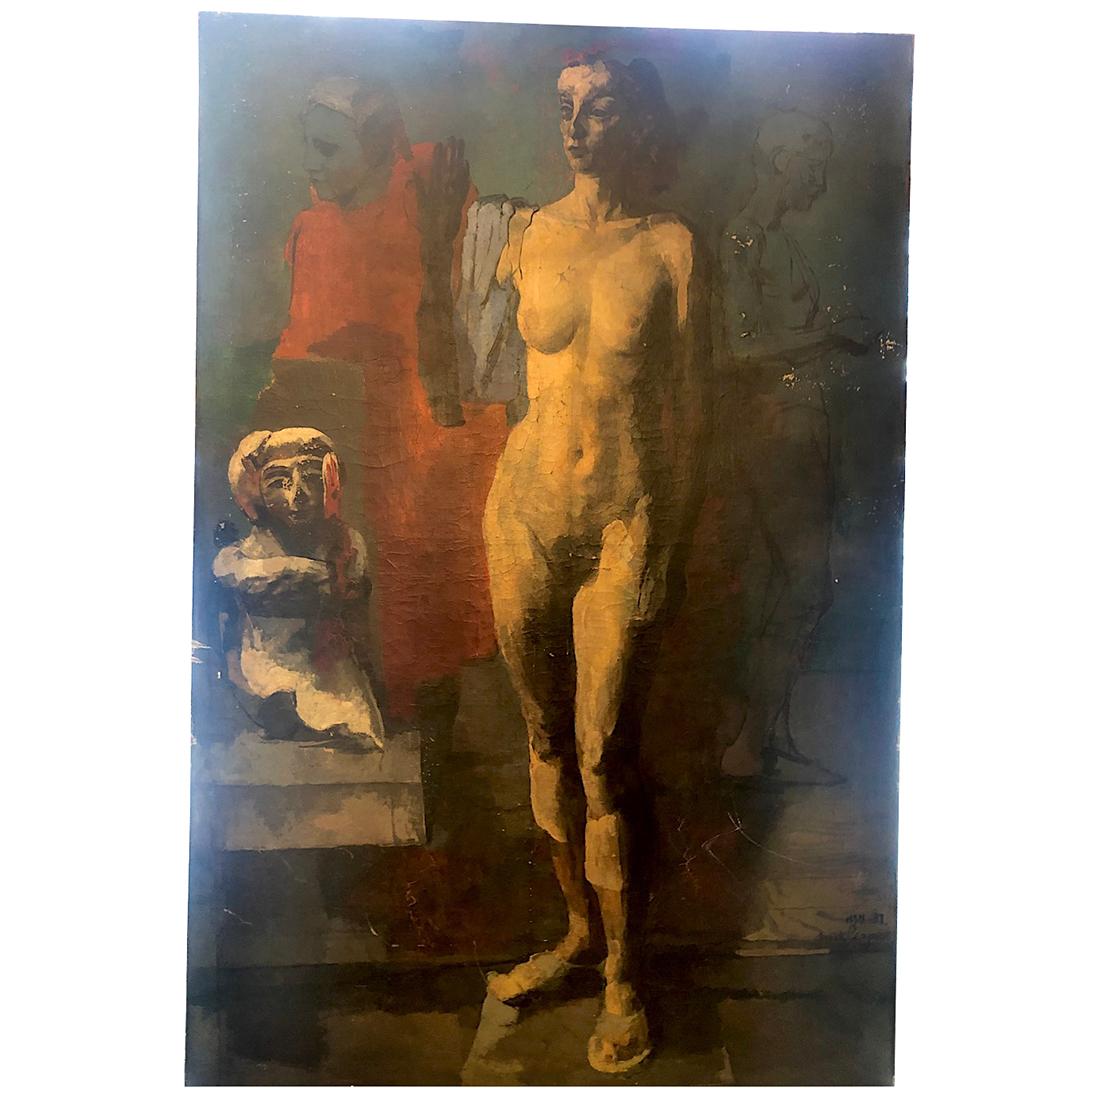 Grande huile sur toile signée de 1937 représentant une femme nue près d'une sculpture et d'autres personnages.

Mesures :
Hauteur : 72